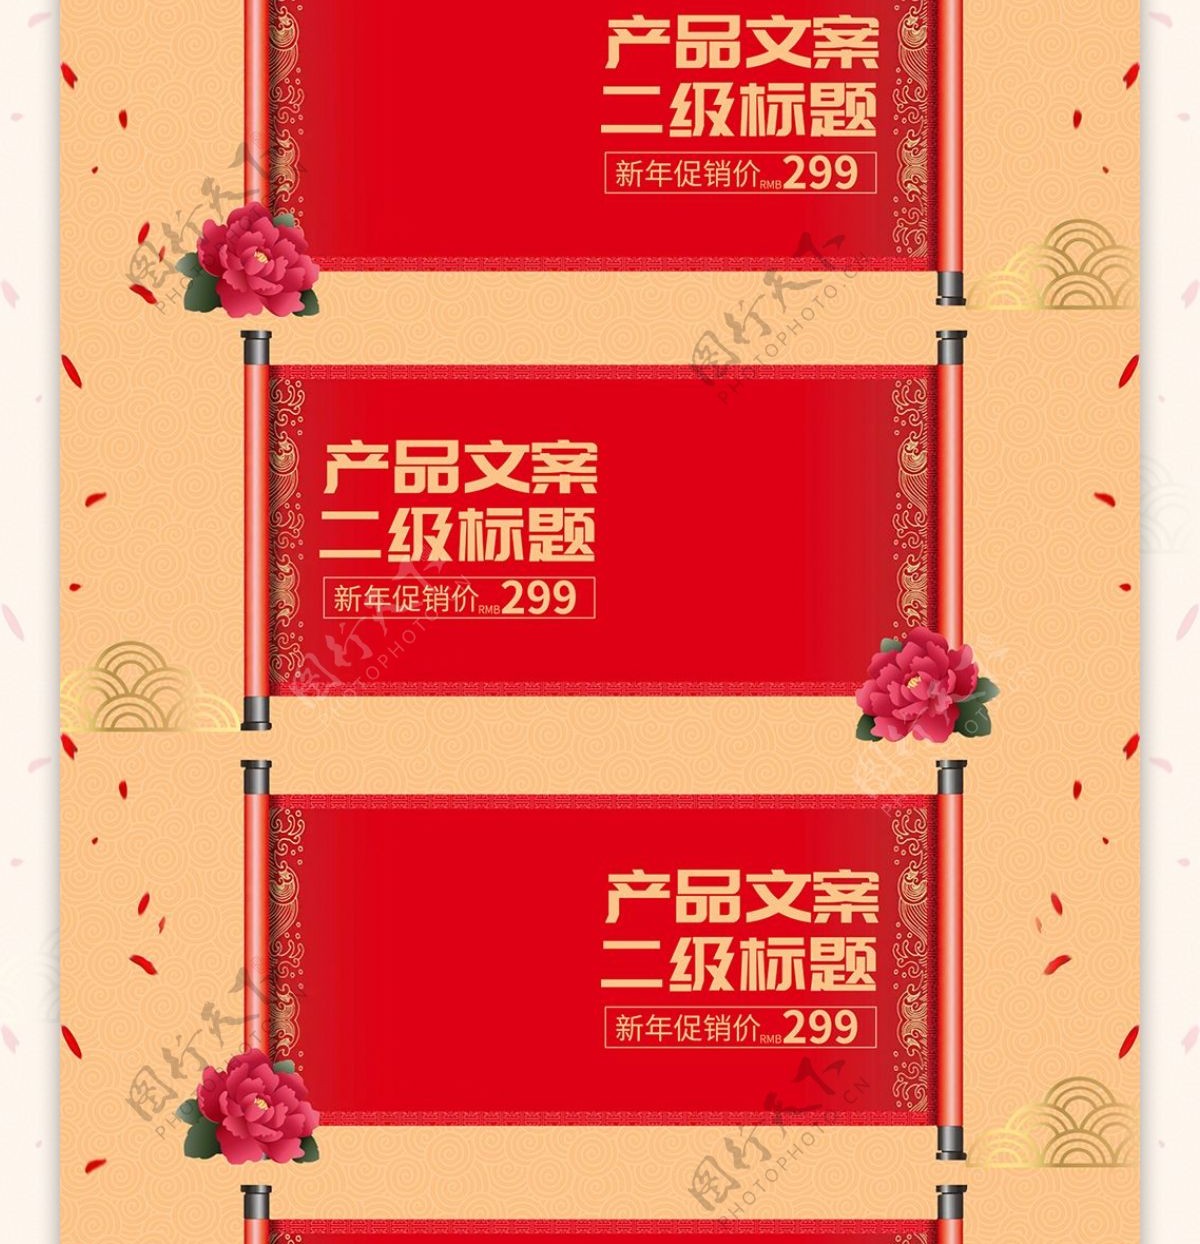 中国风红18新年春节优惠促销牡丹花首页